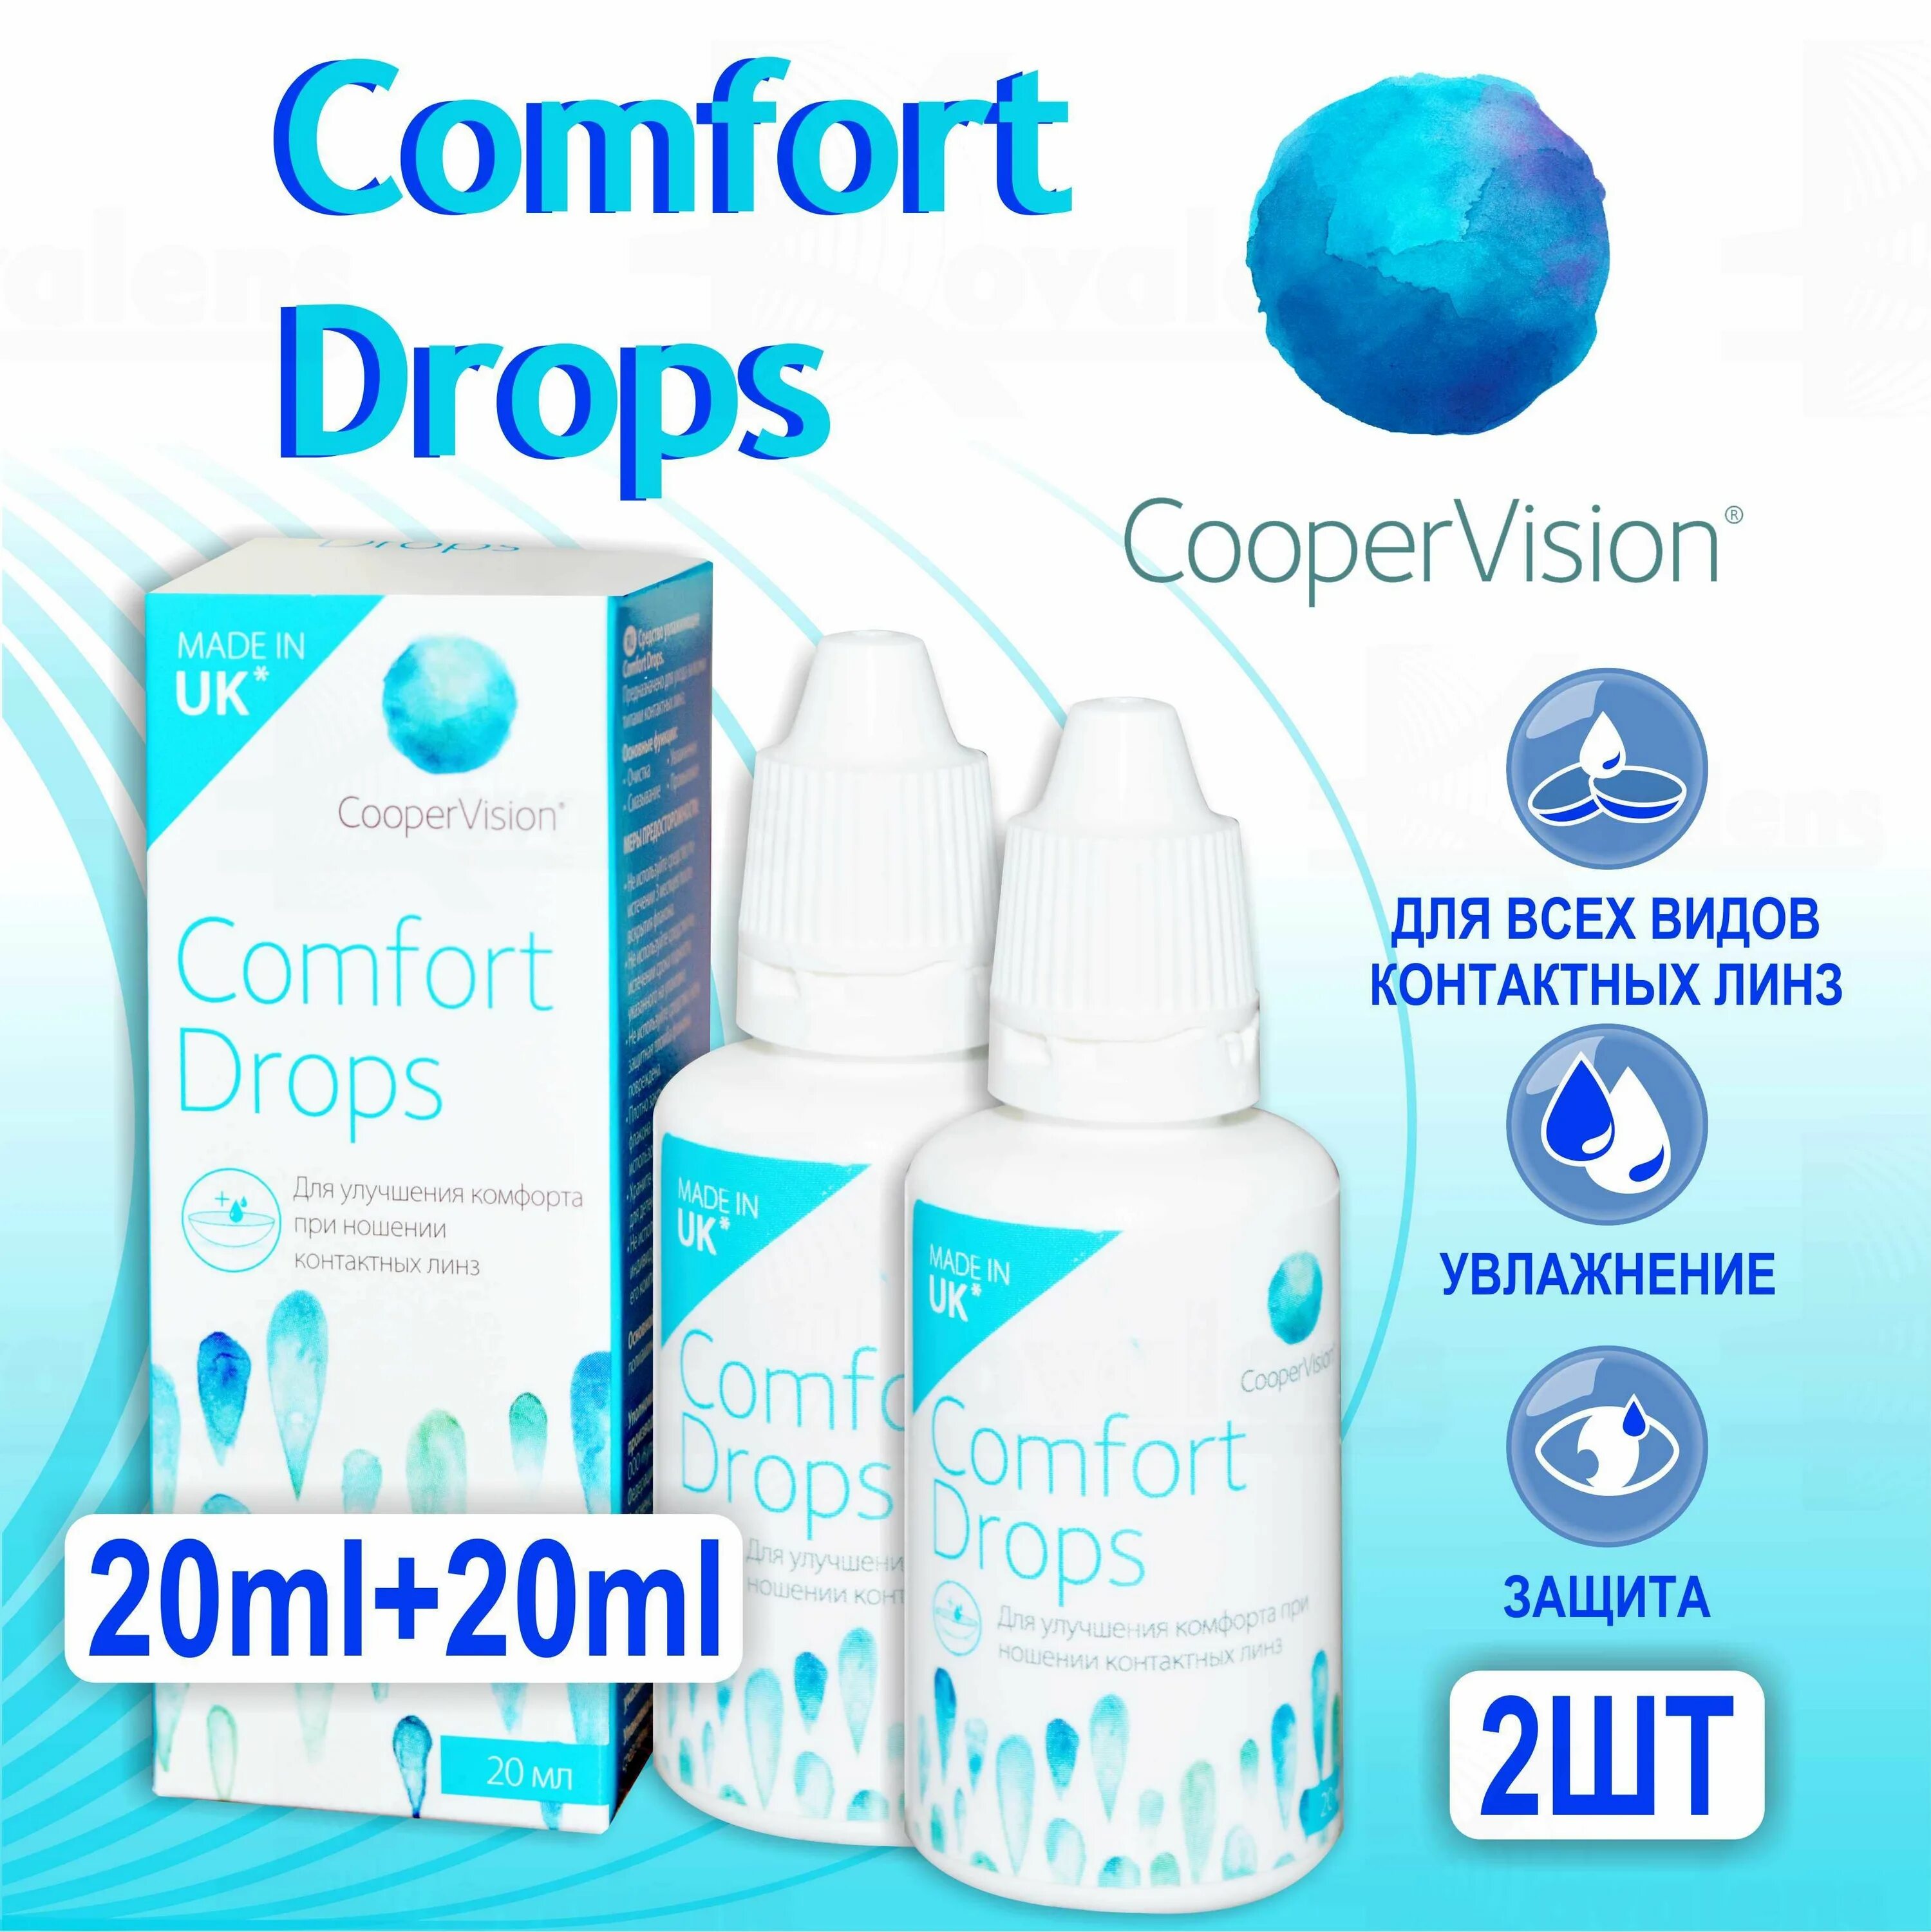 Comfort Drops. Comfort Drops состав. Капли комфорт Дропс. Увлажняющие капли Comfort Drops COOPERVISION 20 мл.